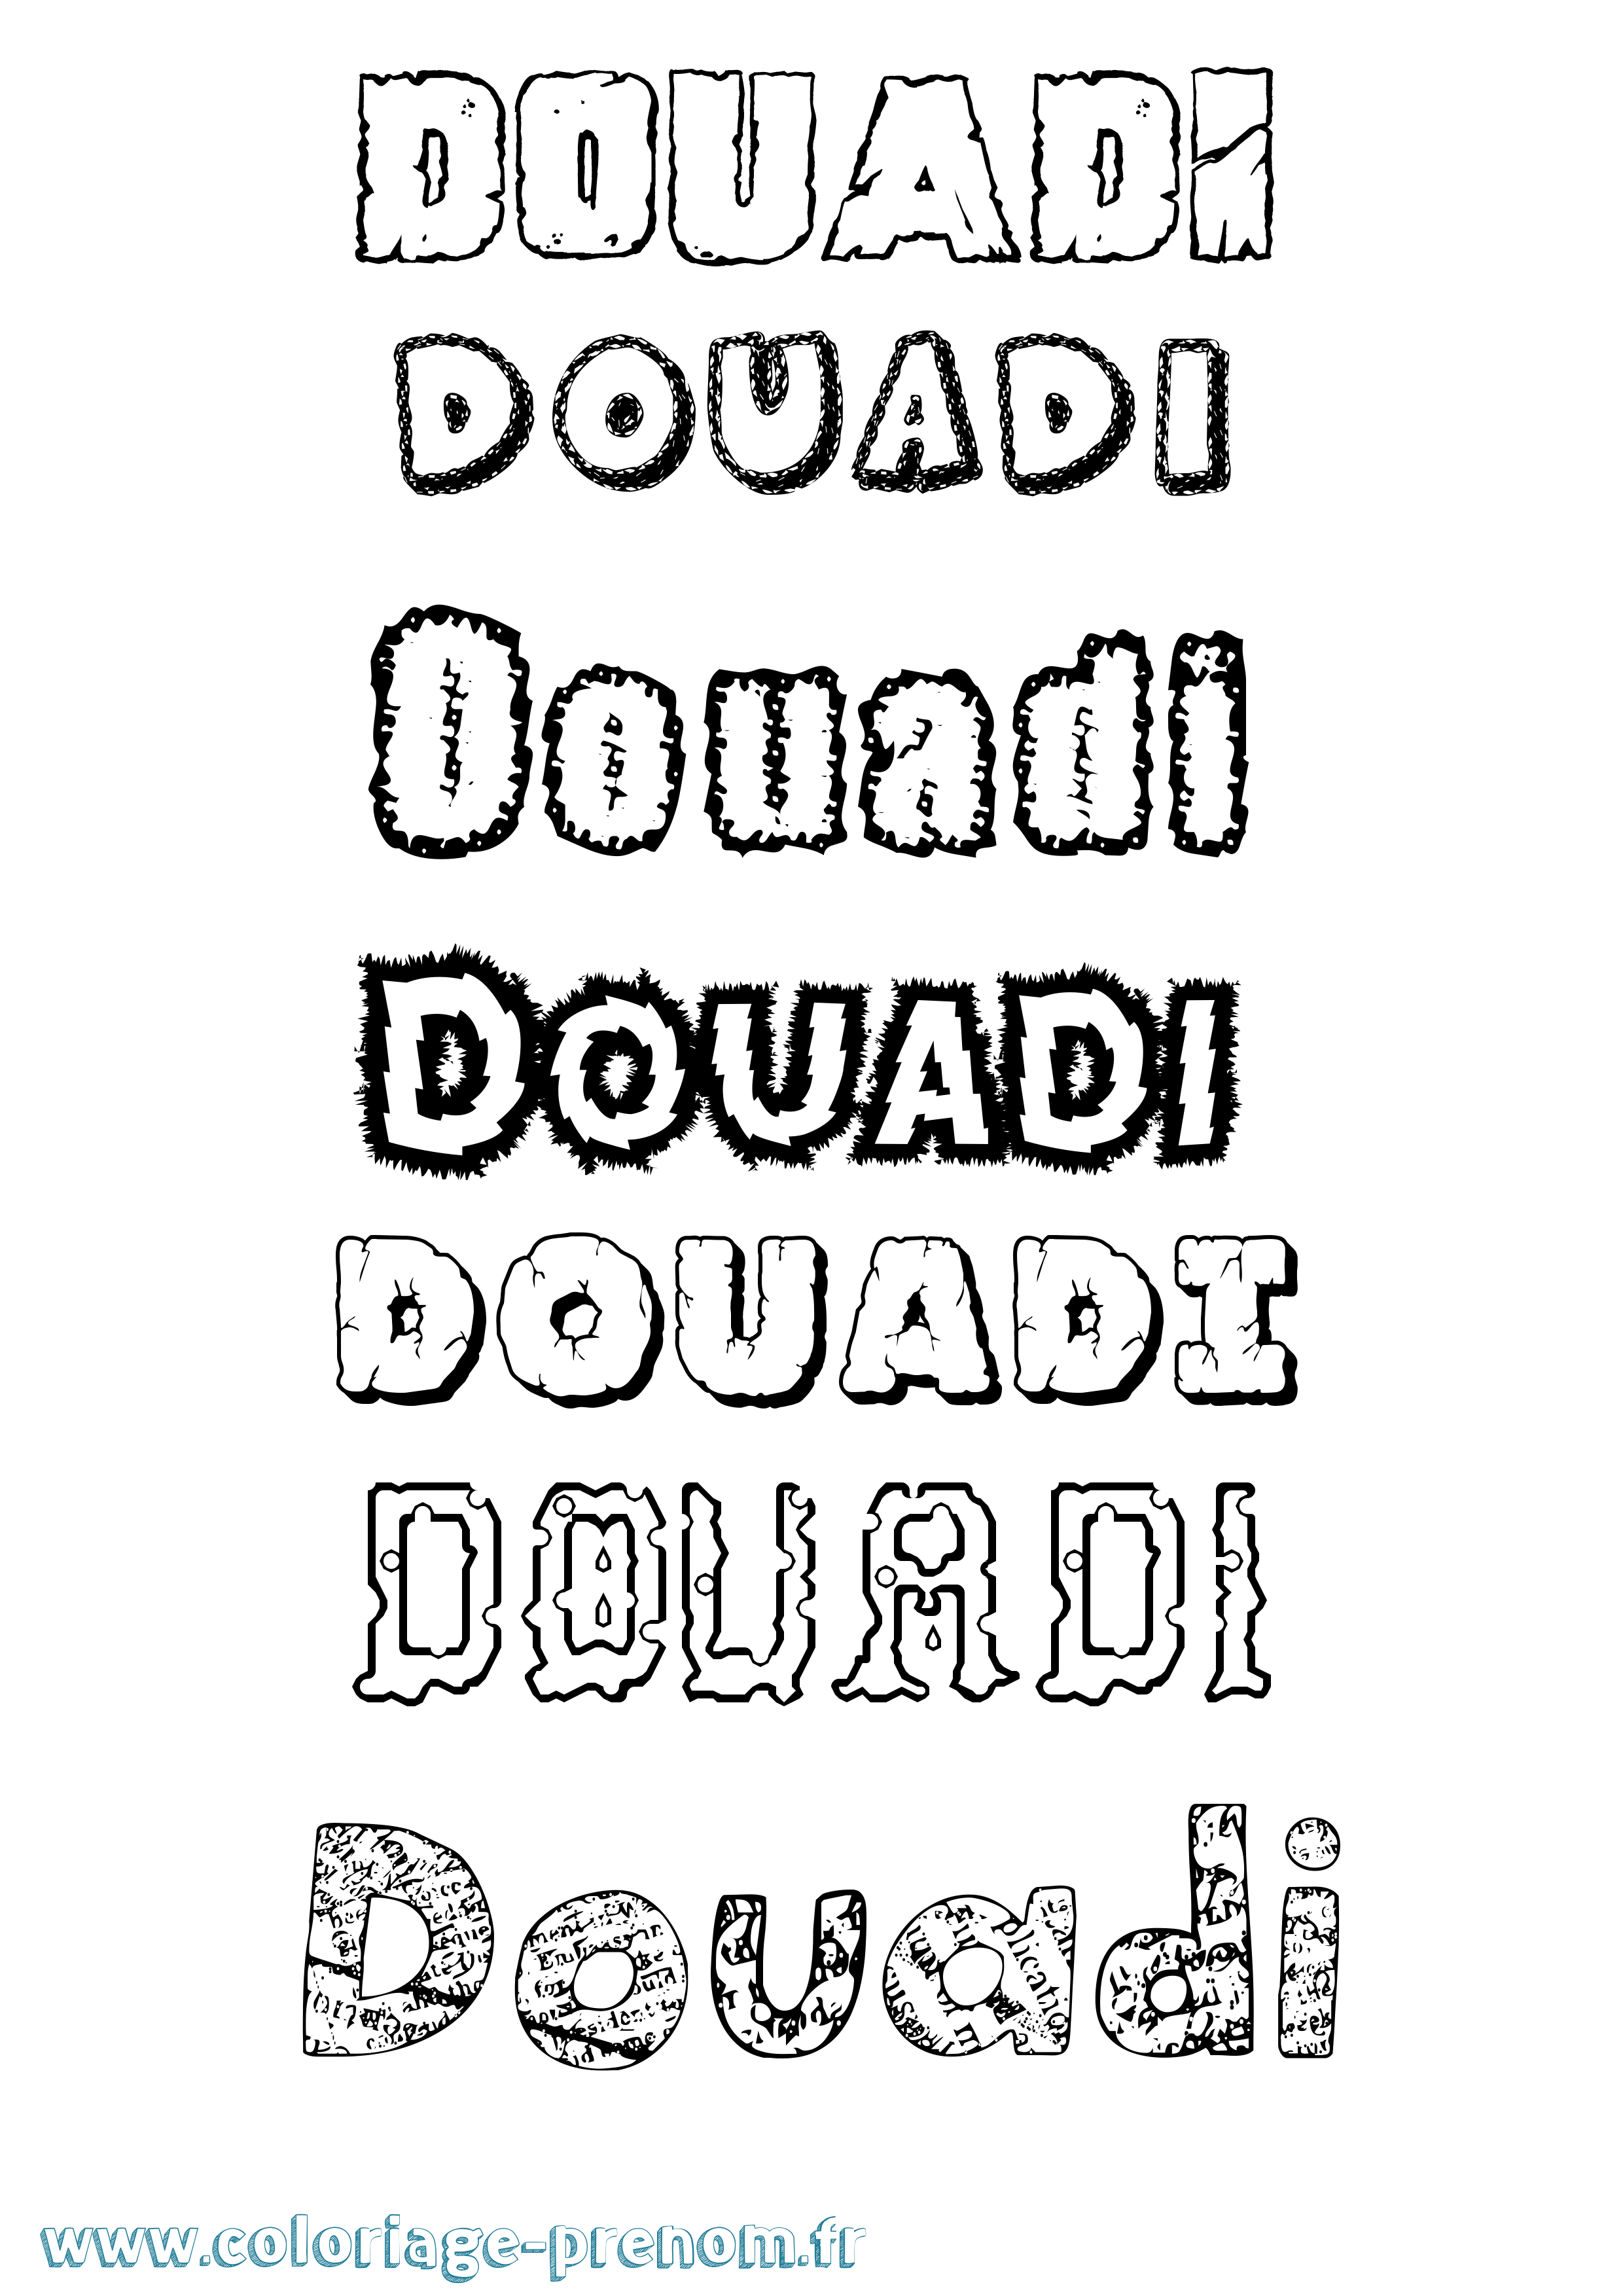 Coloriage prénom Douadi Destructuré